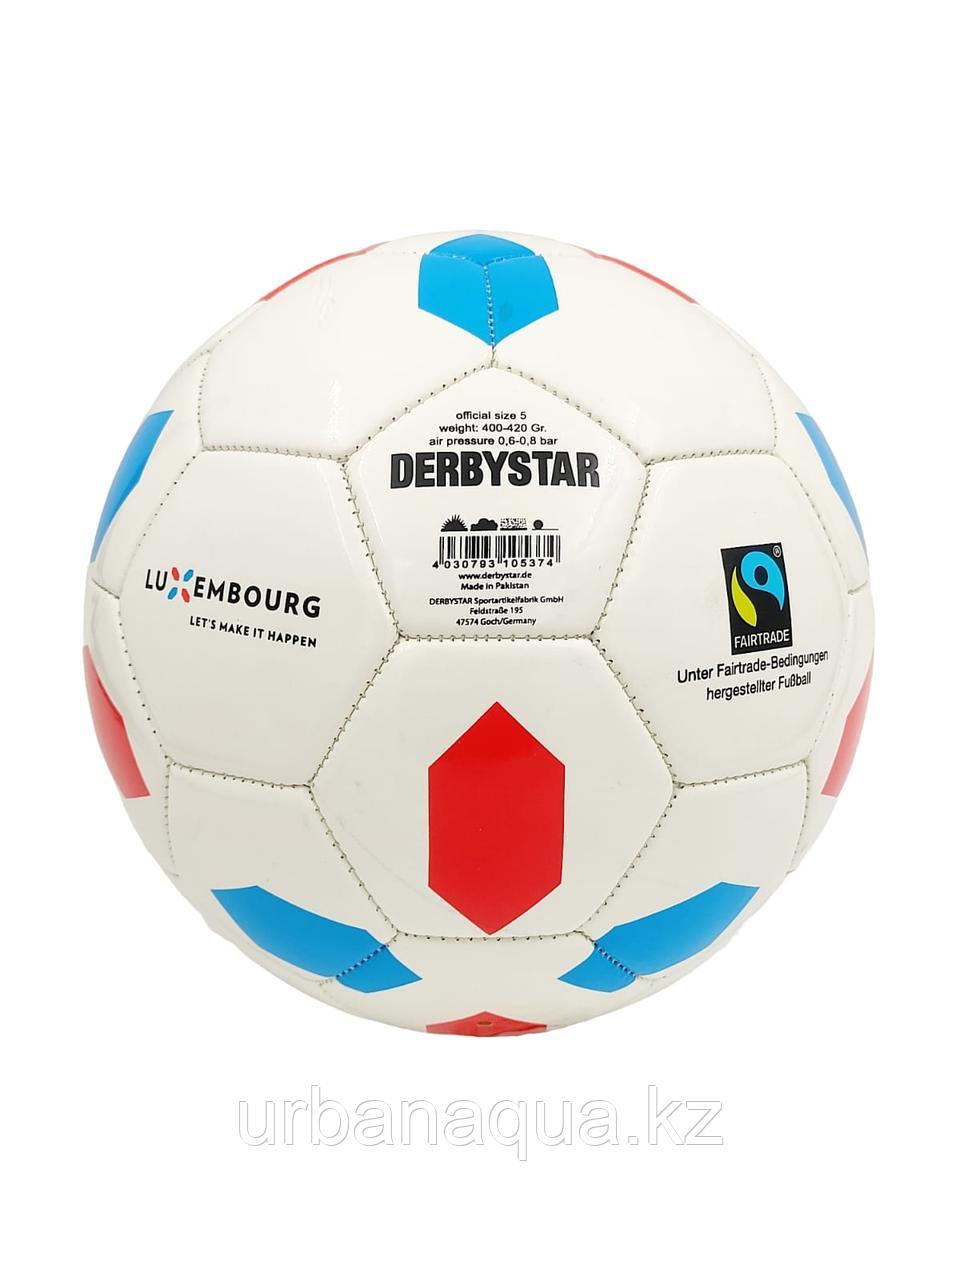 Футбольный мяч DERBYSTAR, фото 1